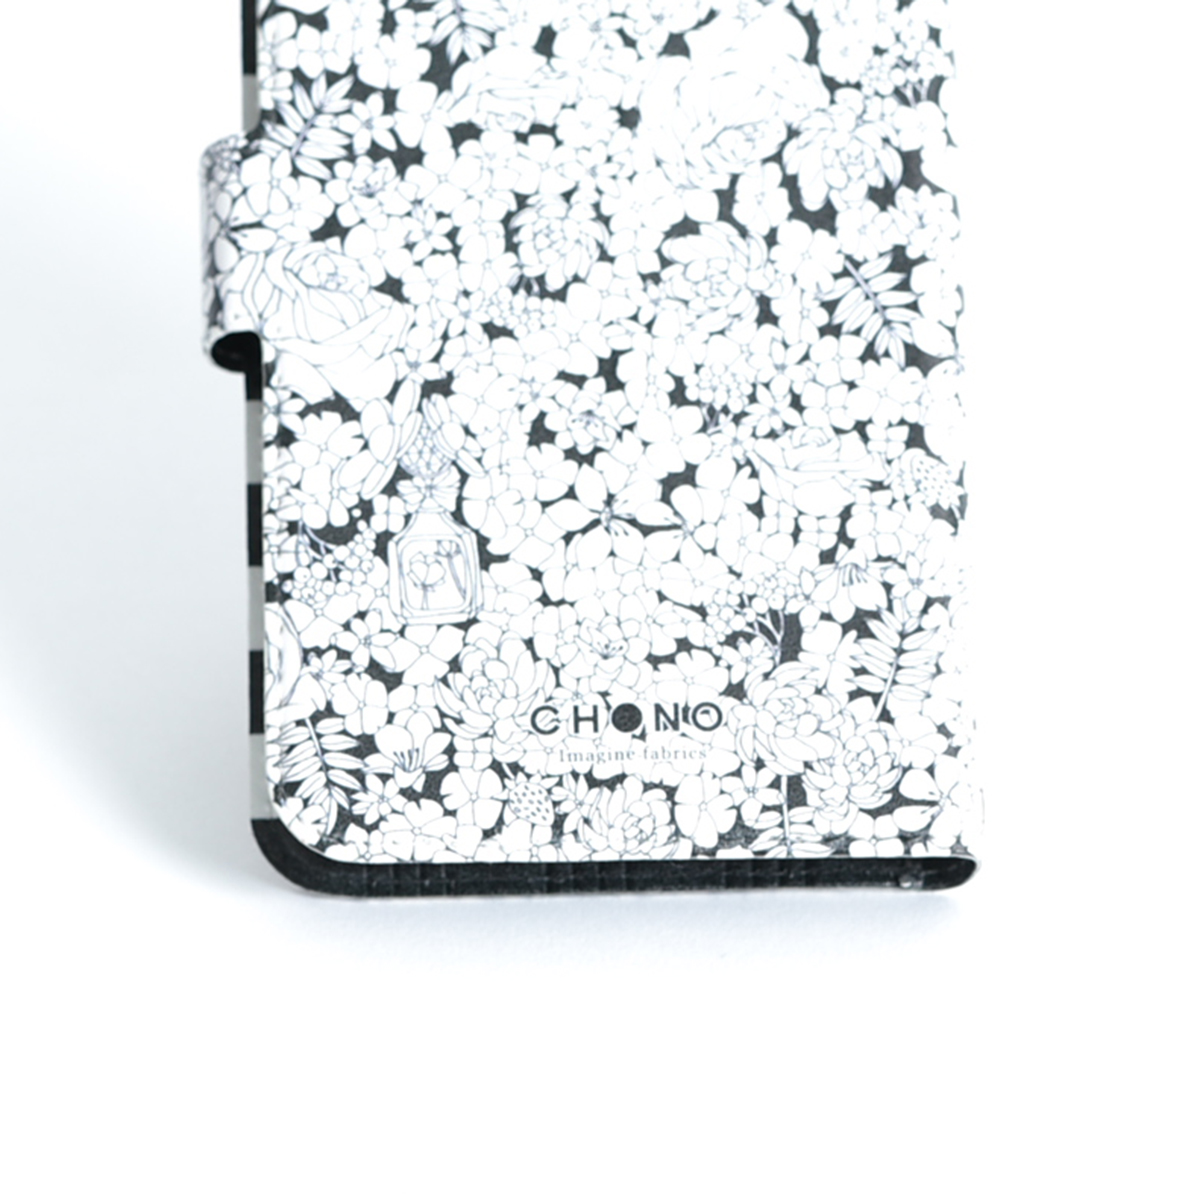 11月下旬お届け予定ご受注商品『Sincere』 Android notebook type case画像